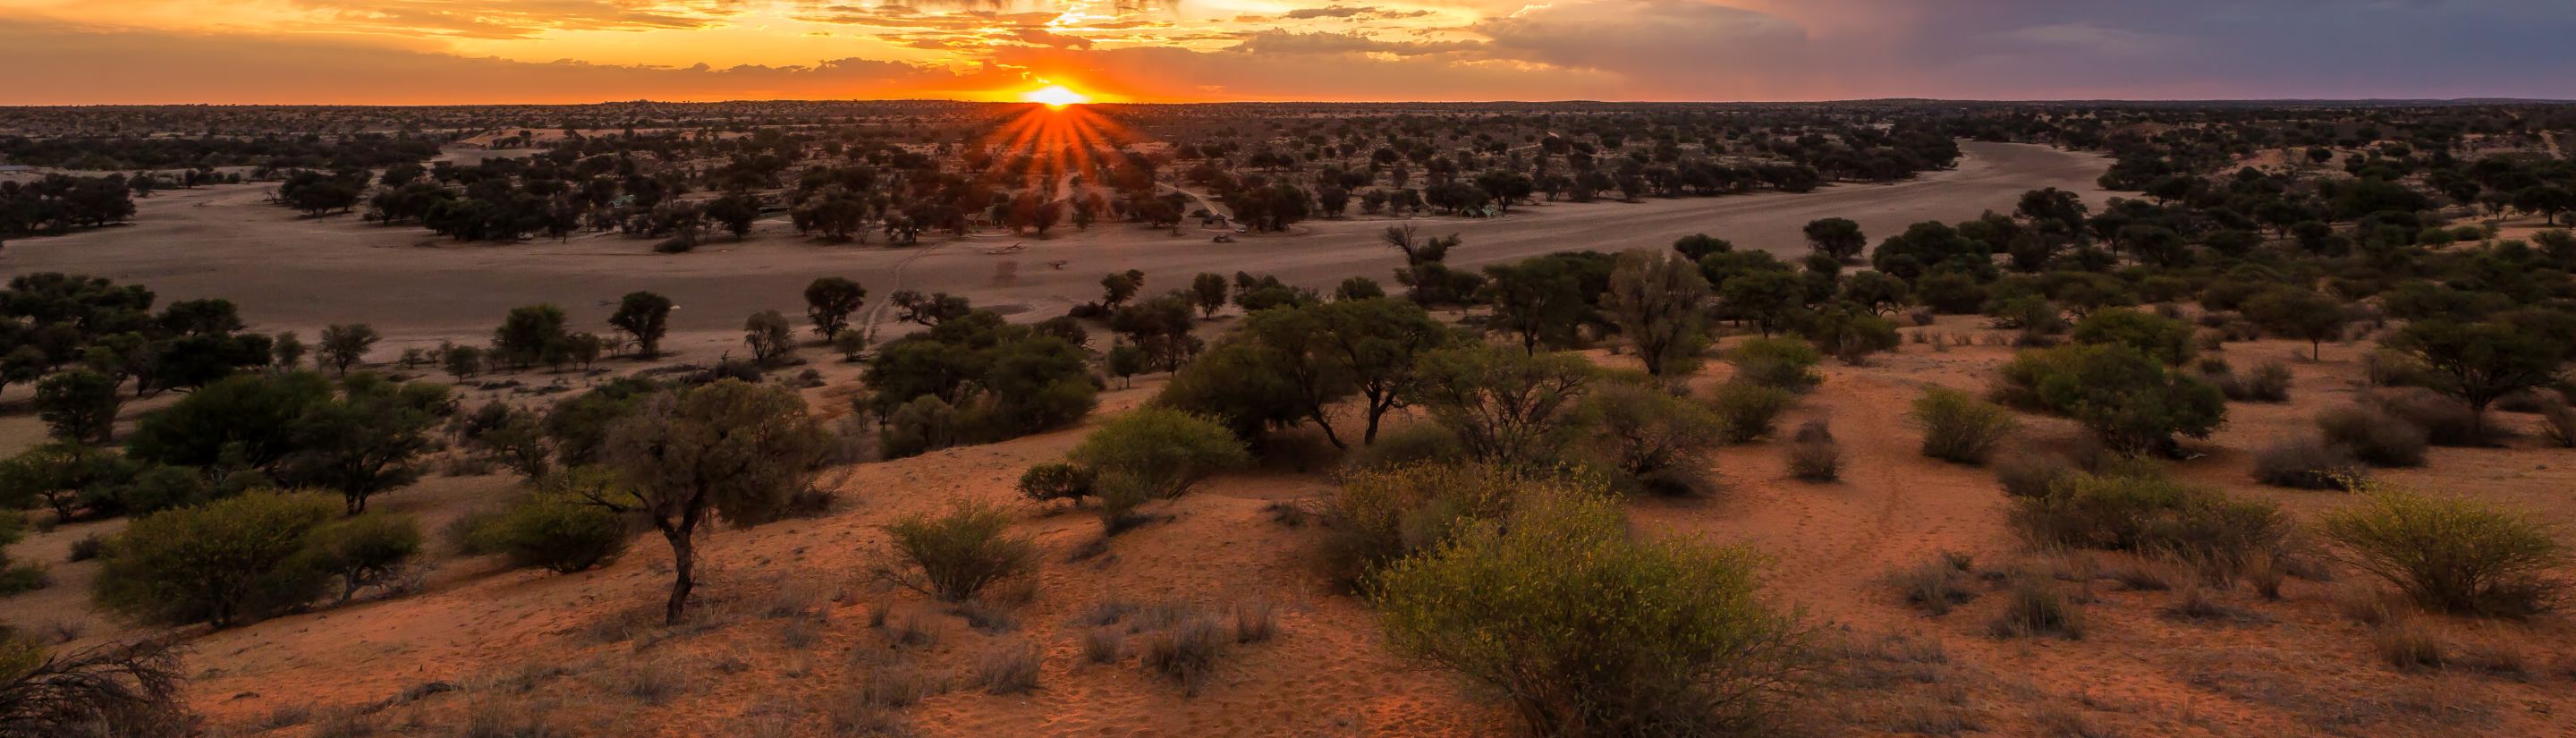 Kalahari Wüste - die Dornstrauchsavanne